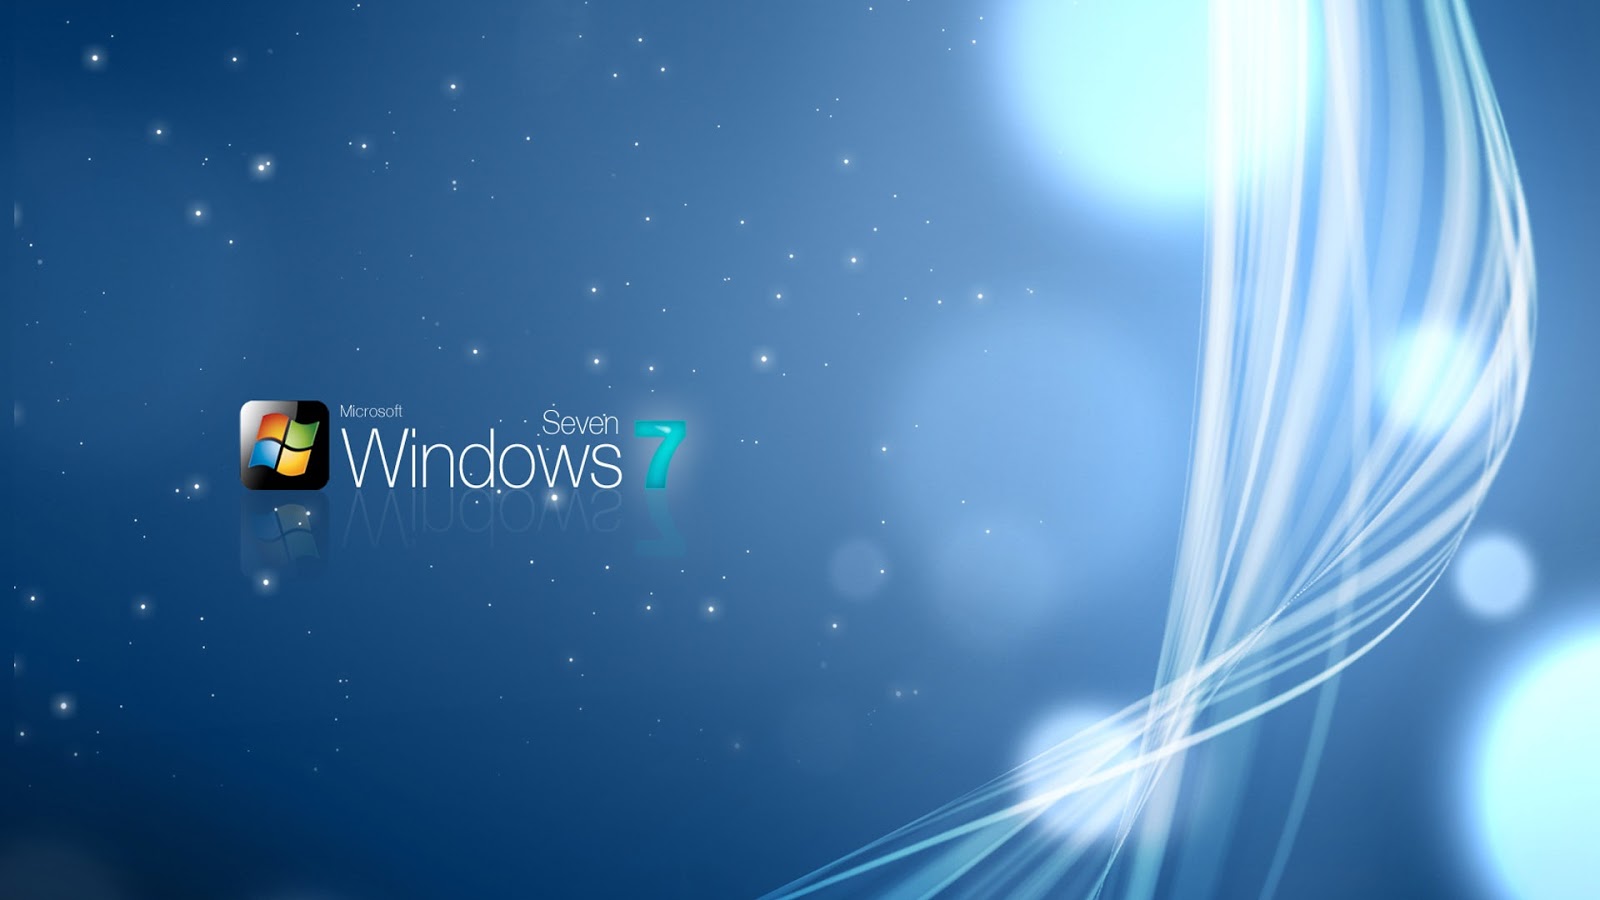 ... & Logo Wallpaper Collection: Windows seven 7 logo wallpaper (part-7